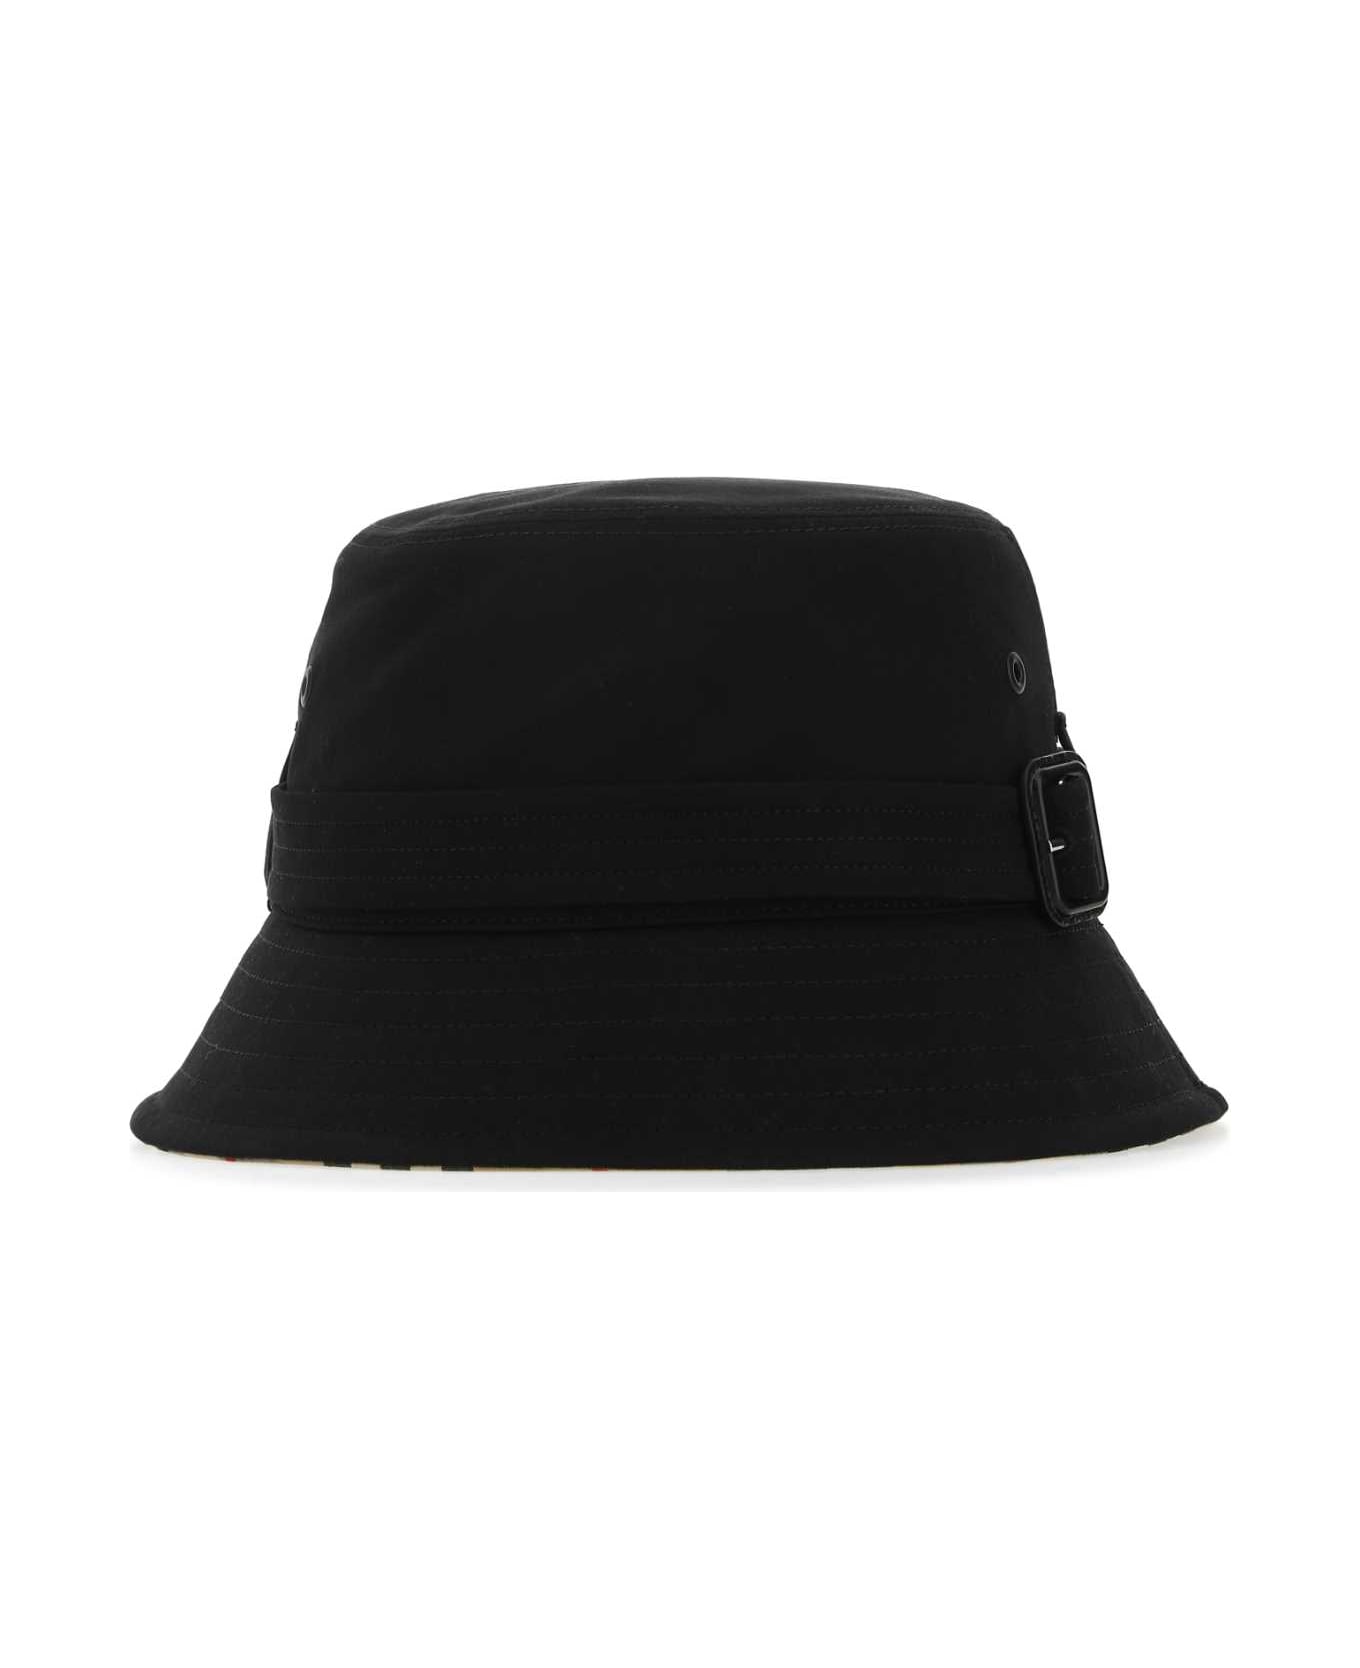 Burberry Black Cotton Hat - A1189